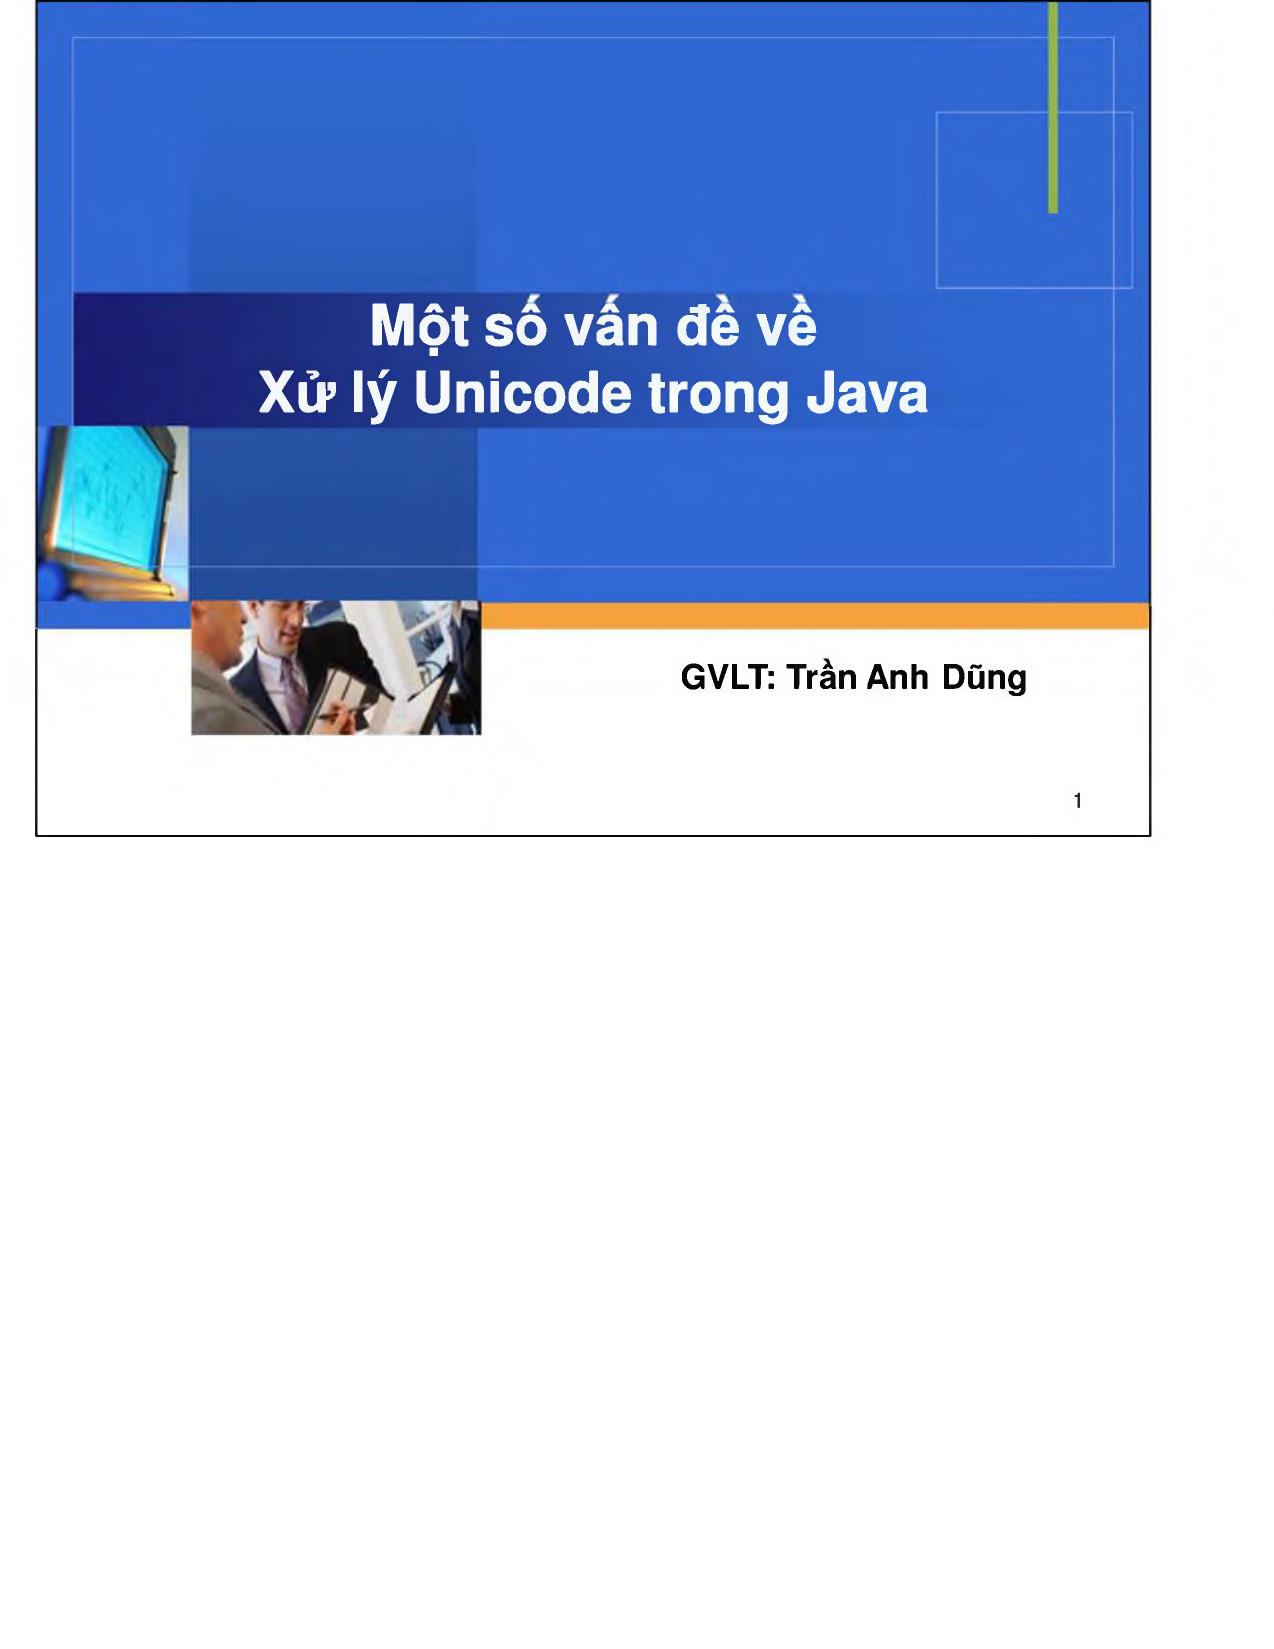 Một số vấn đề về xử lý Unicode trong Java trang 1